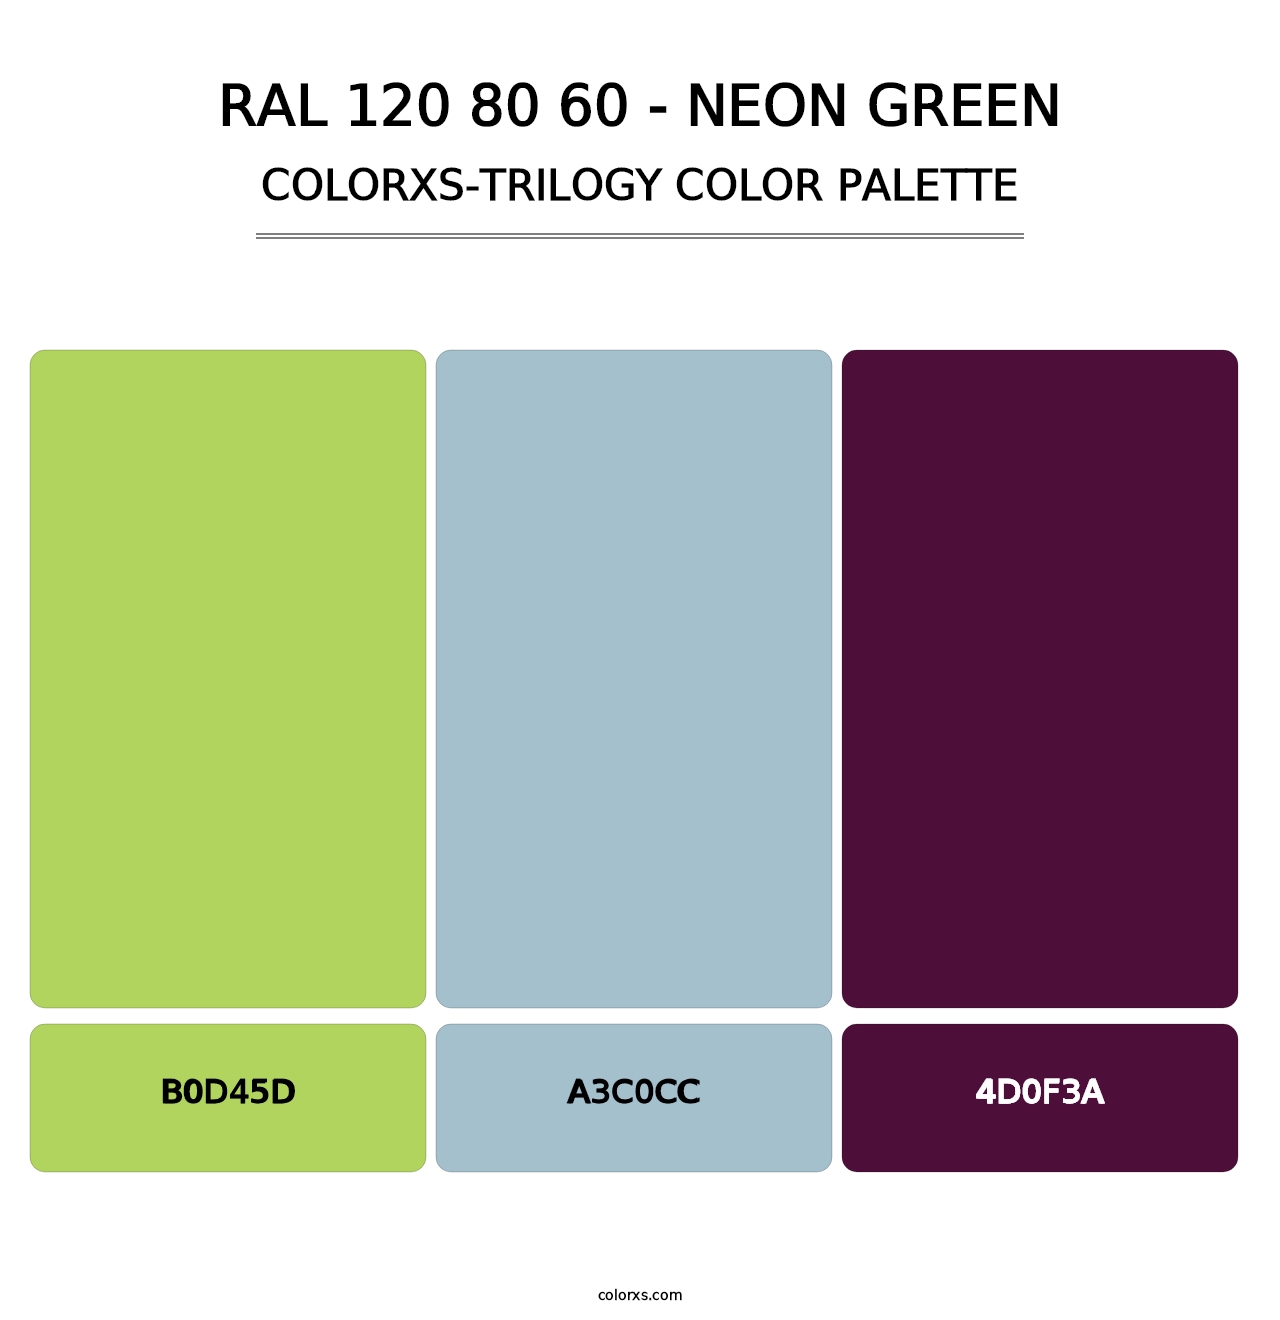 RAL 120 80 60 - Neon Green - Colorxs Trilogy Palette